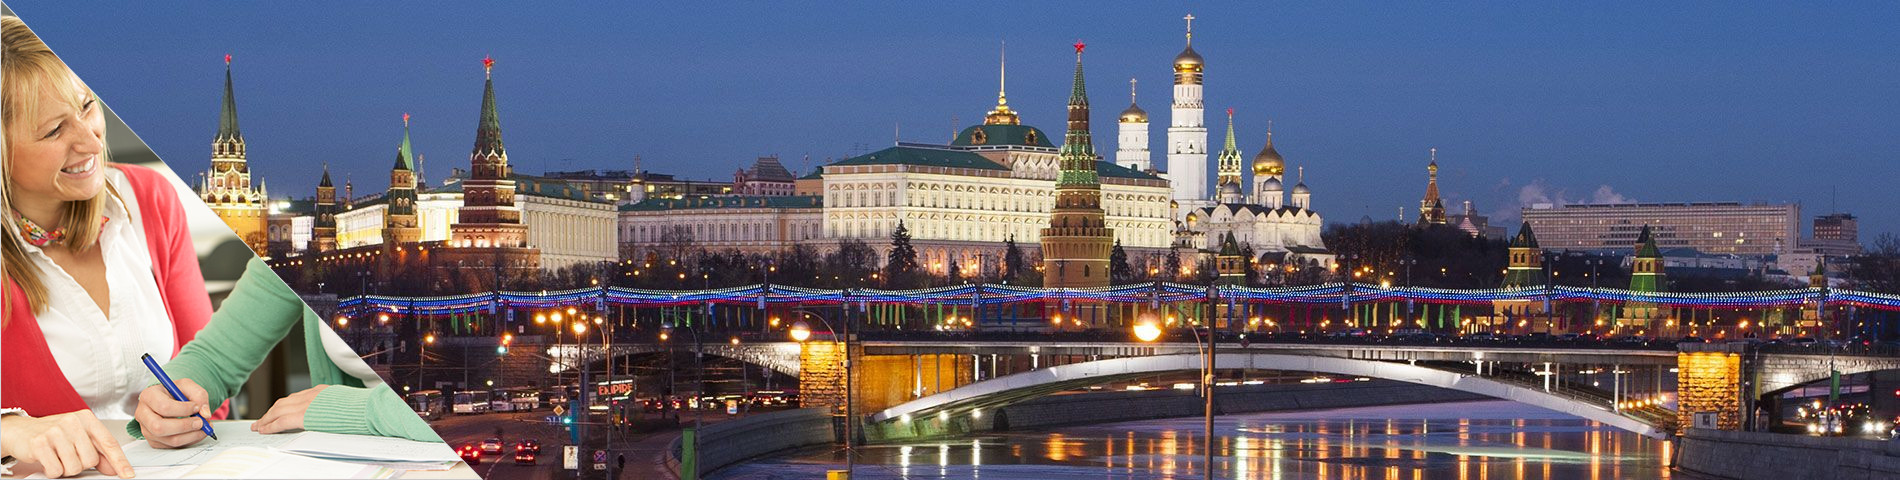 Moskva - Študujte a bývajte v dome učiteľa